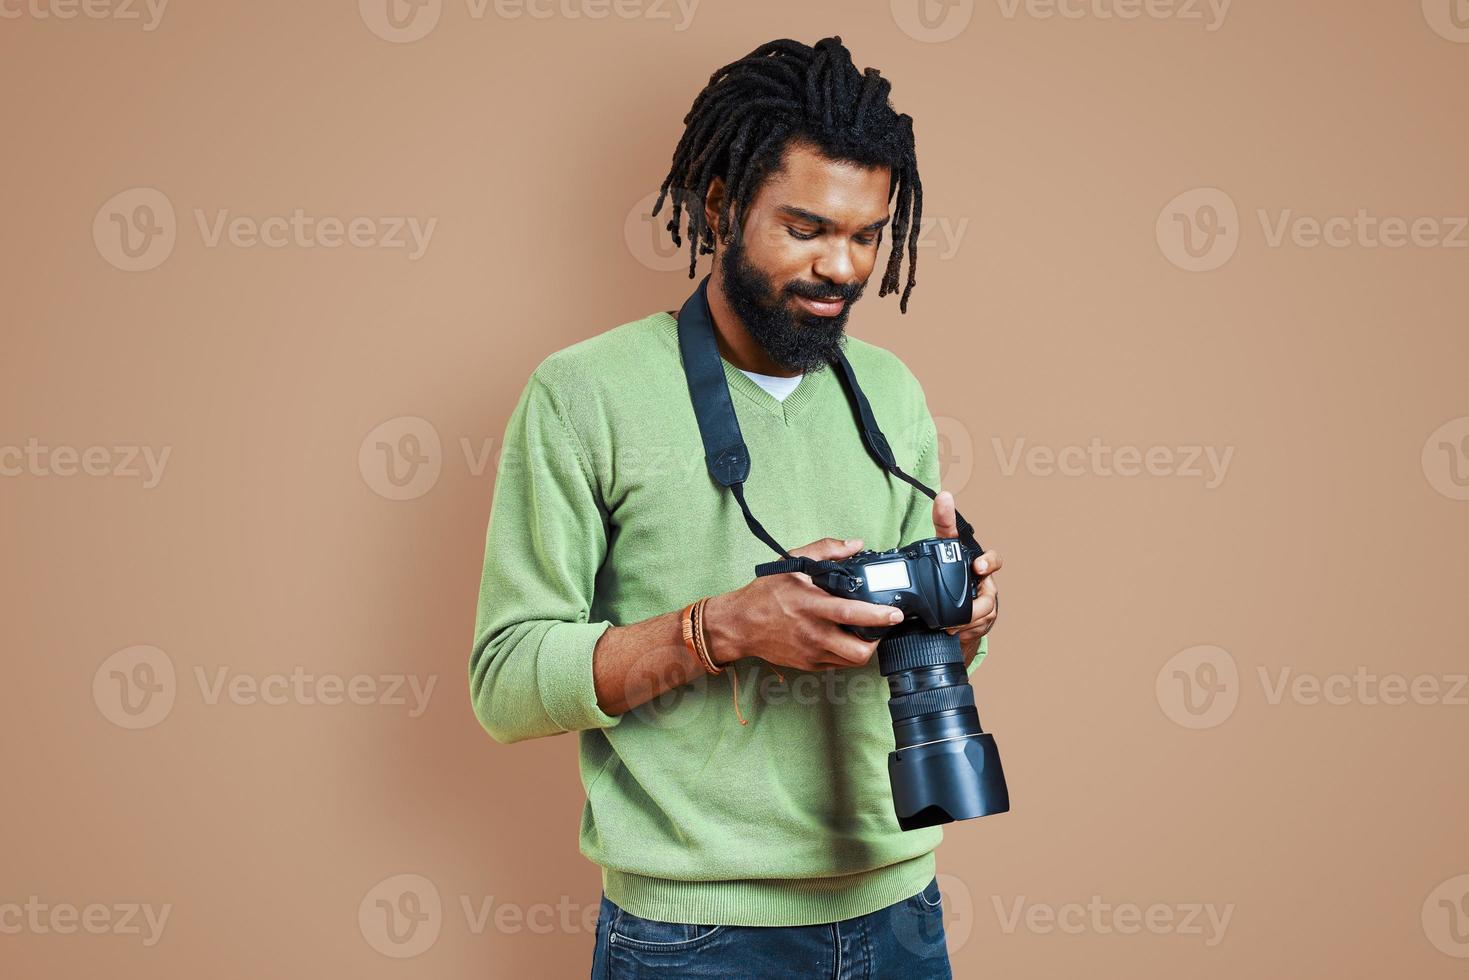 bonito jovem fotógrafo africano em roupas casuais usando câmera digital e sorrindo em pé contra um fundo marrom foto